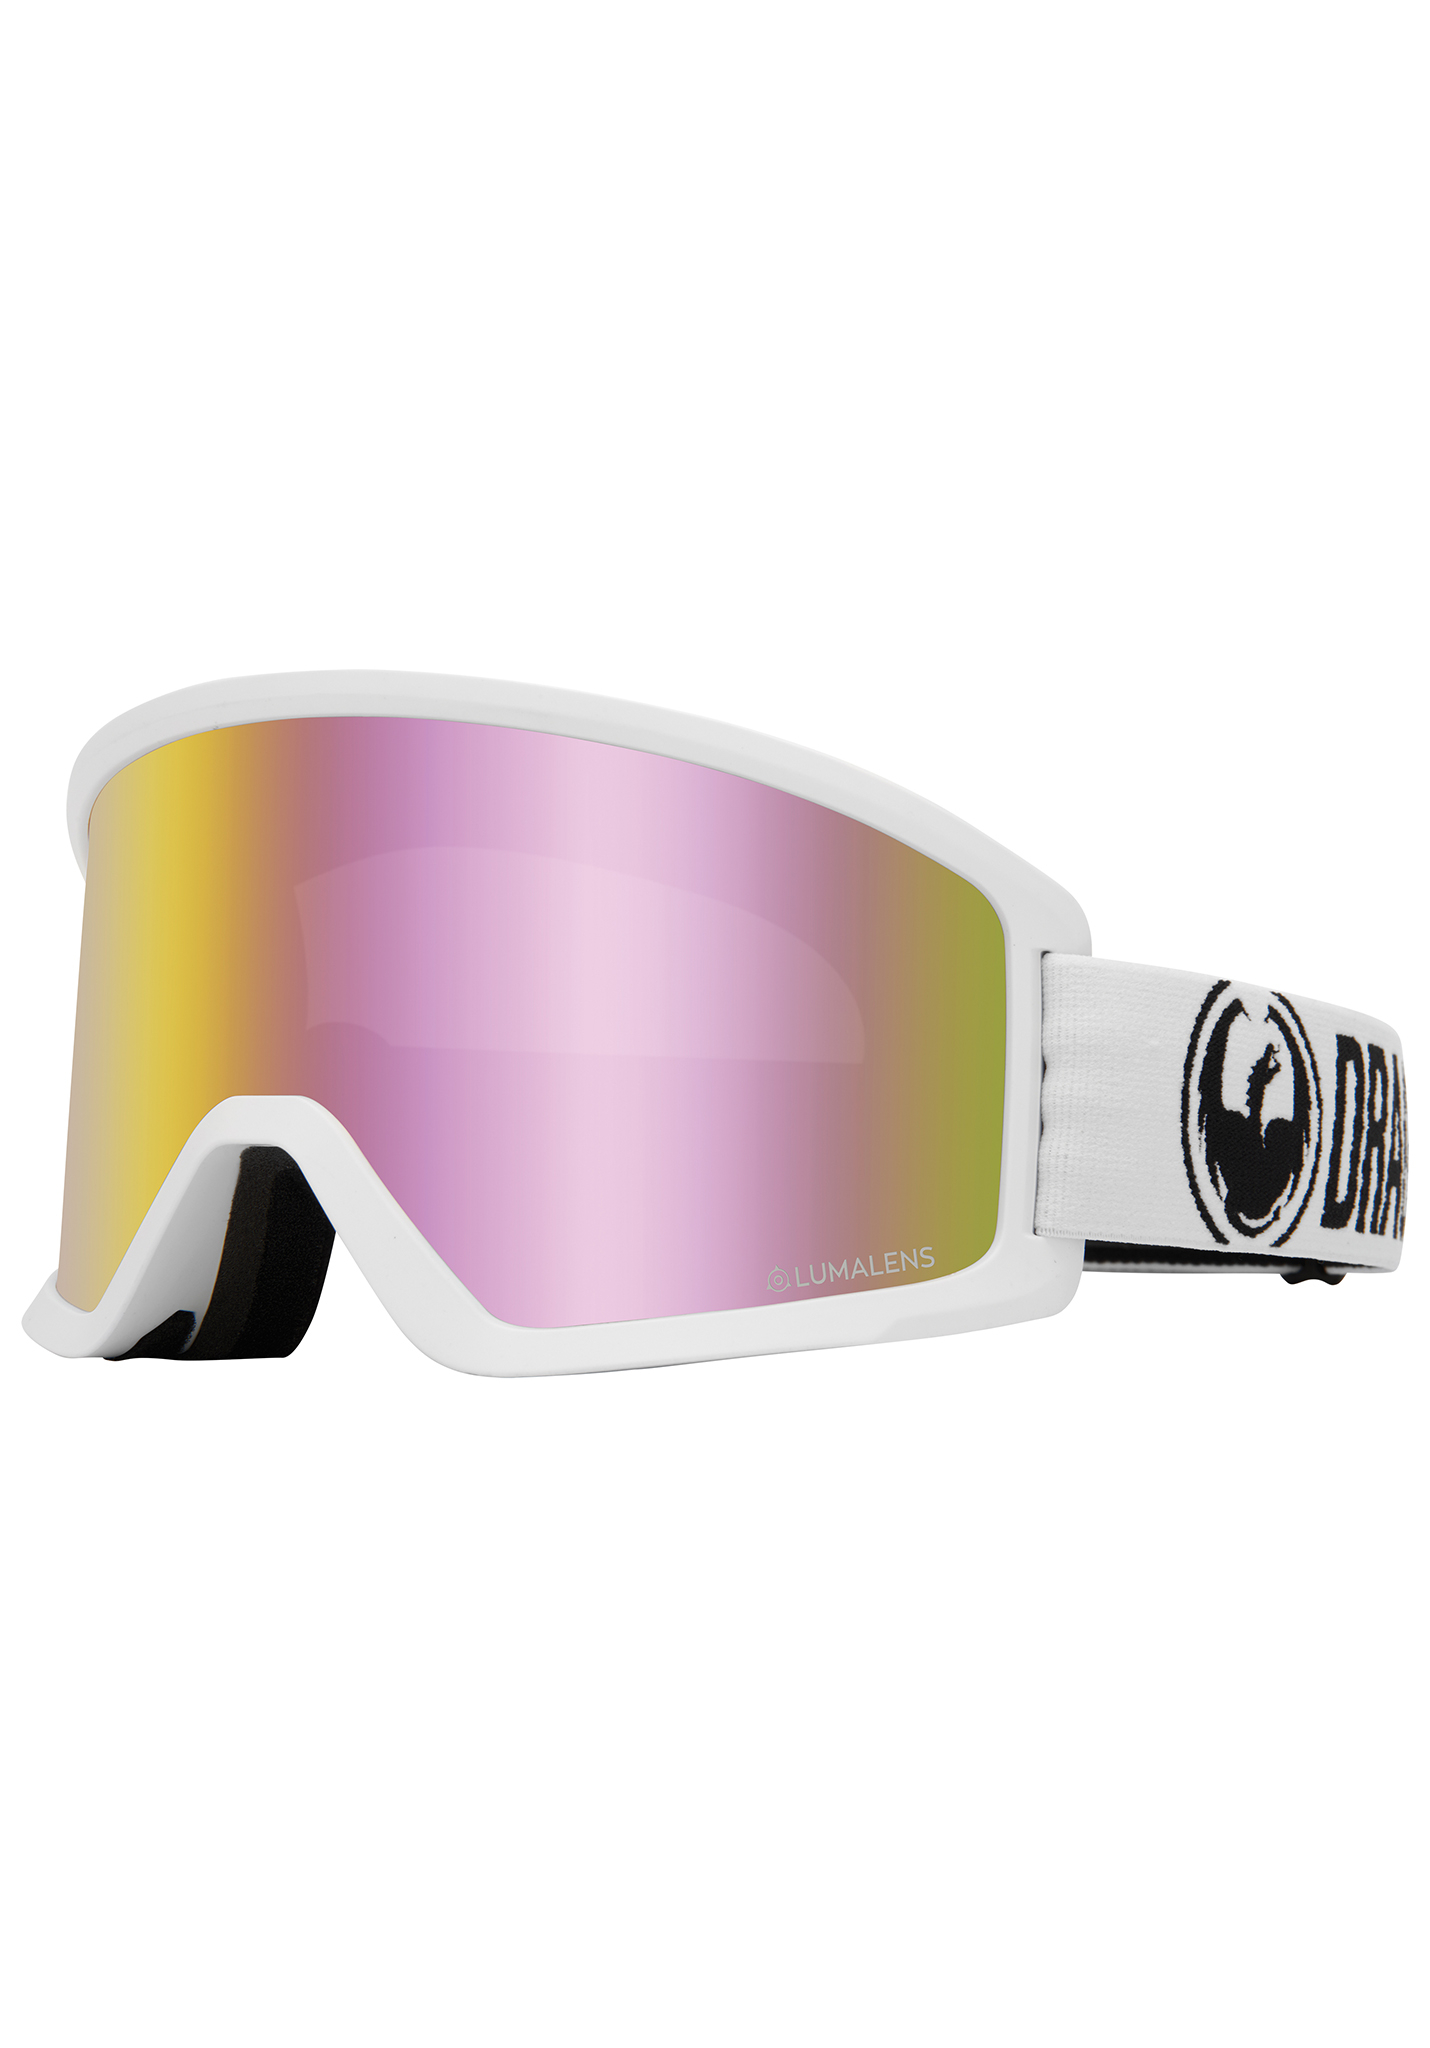 Dragon DX3 Snowboardbrillen weiß / lumalens rosa ionen One Size